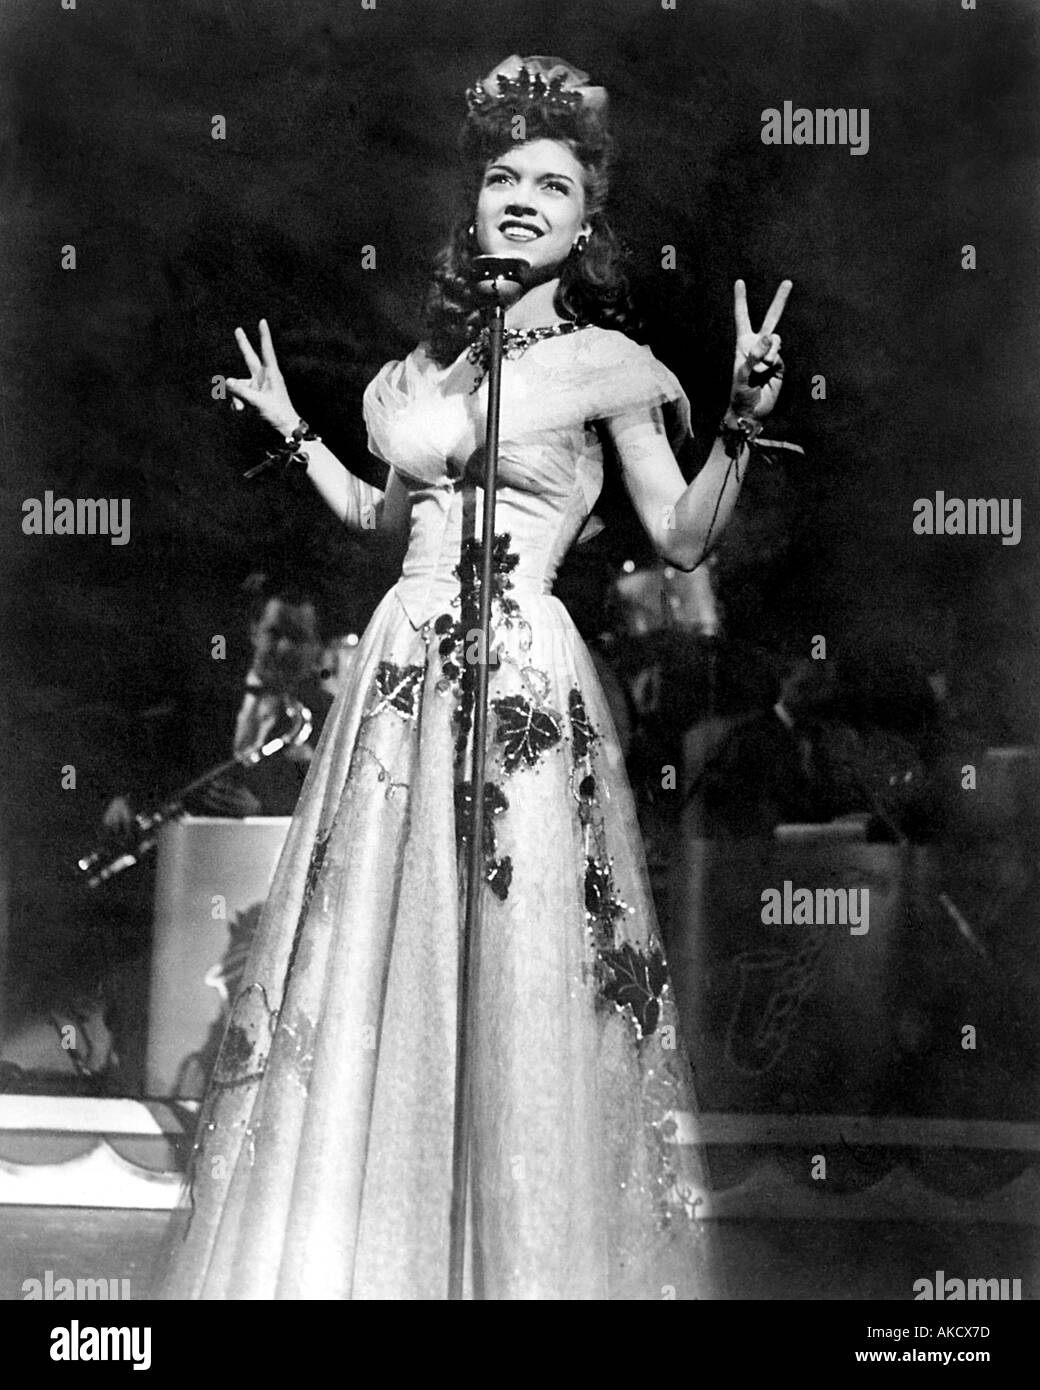 ELLA MAE MORSE amerikanische Sängerin in den 1940er Jahren populär Stockfoto